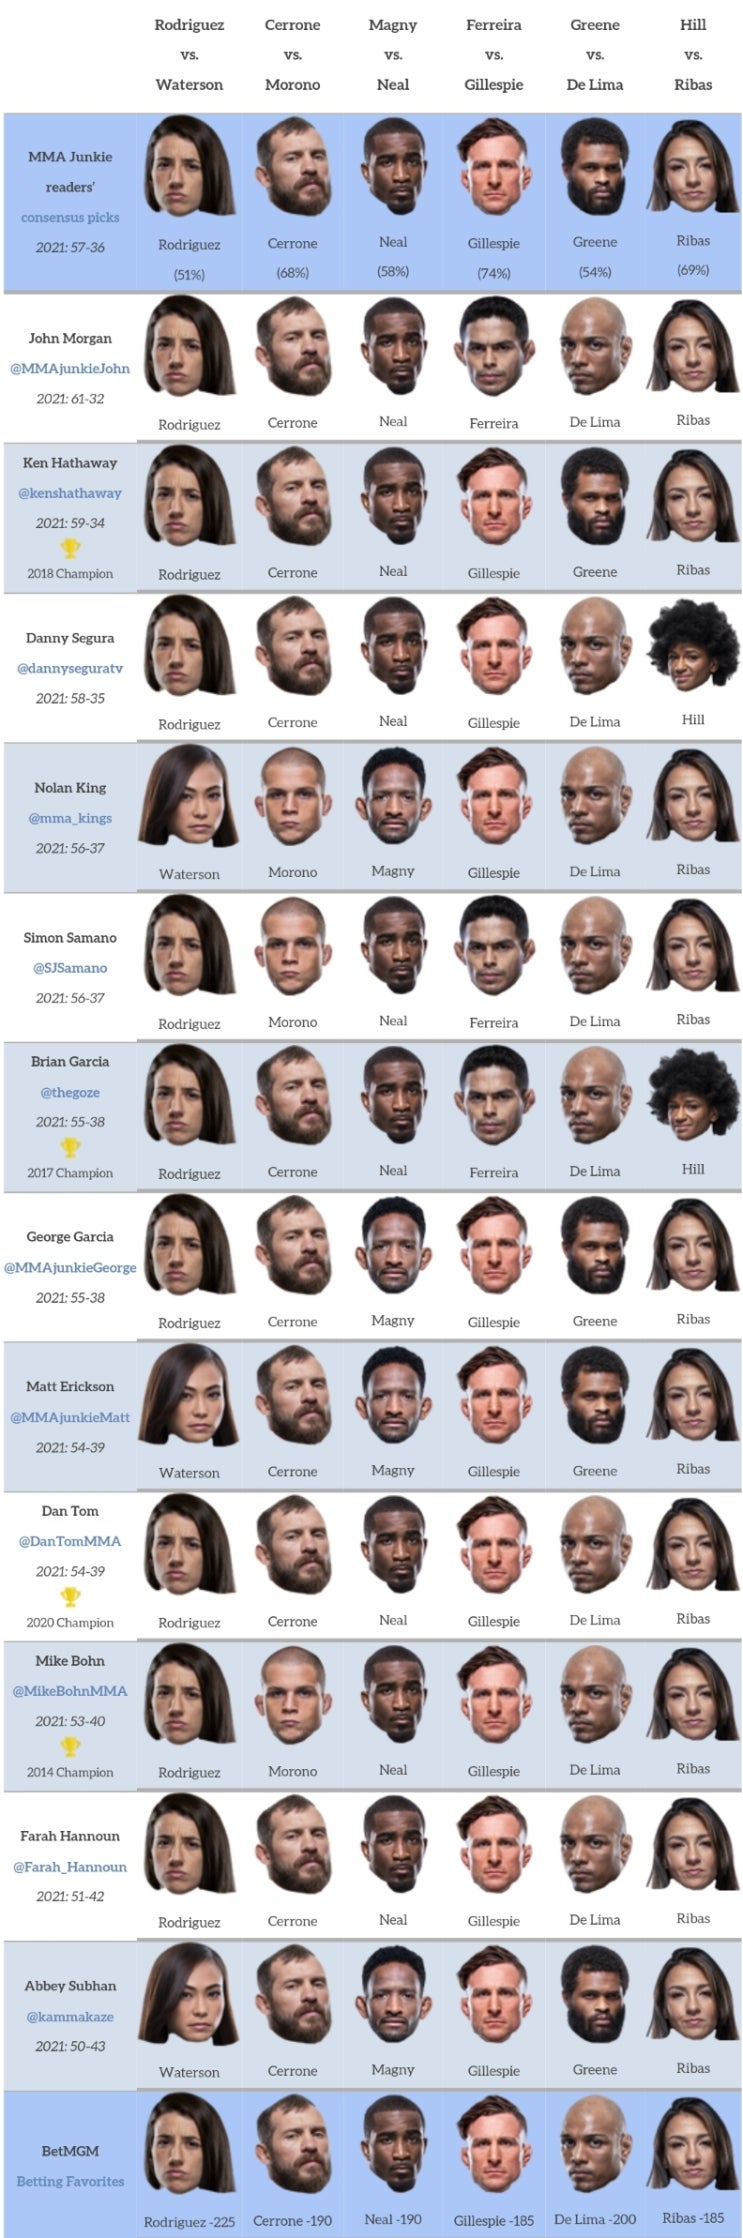 UFC 베가스 26: 로드리게즈 vs 워터슨 프리뷰(박준용 출전) (미디어 예상 및 배당률)